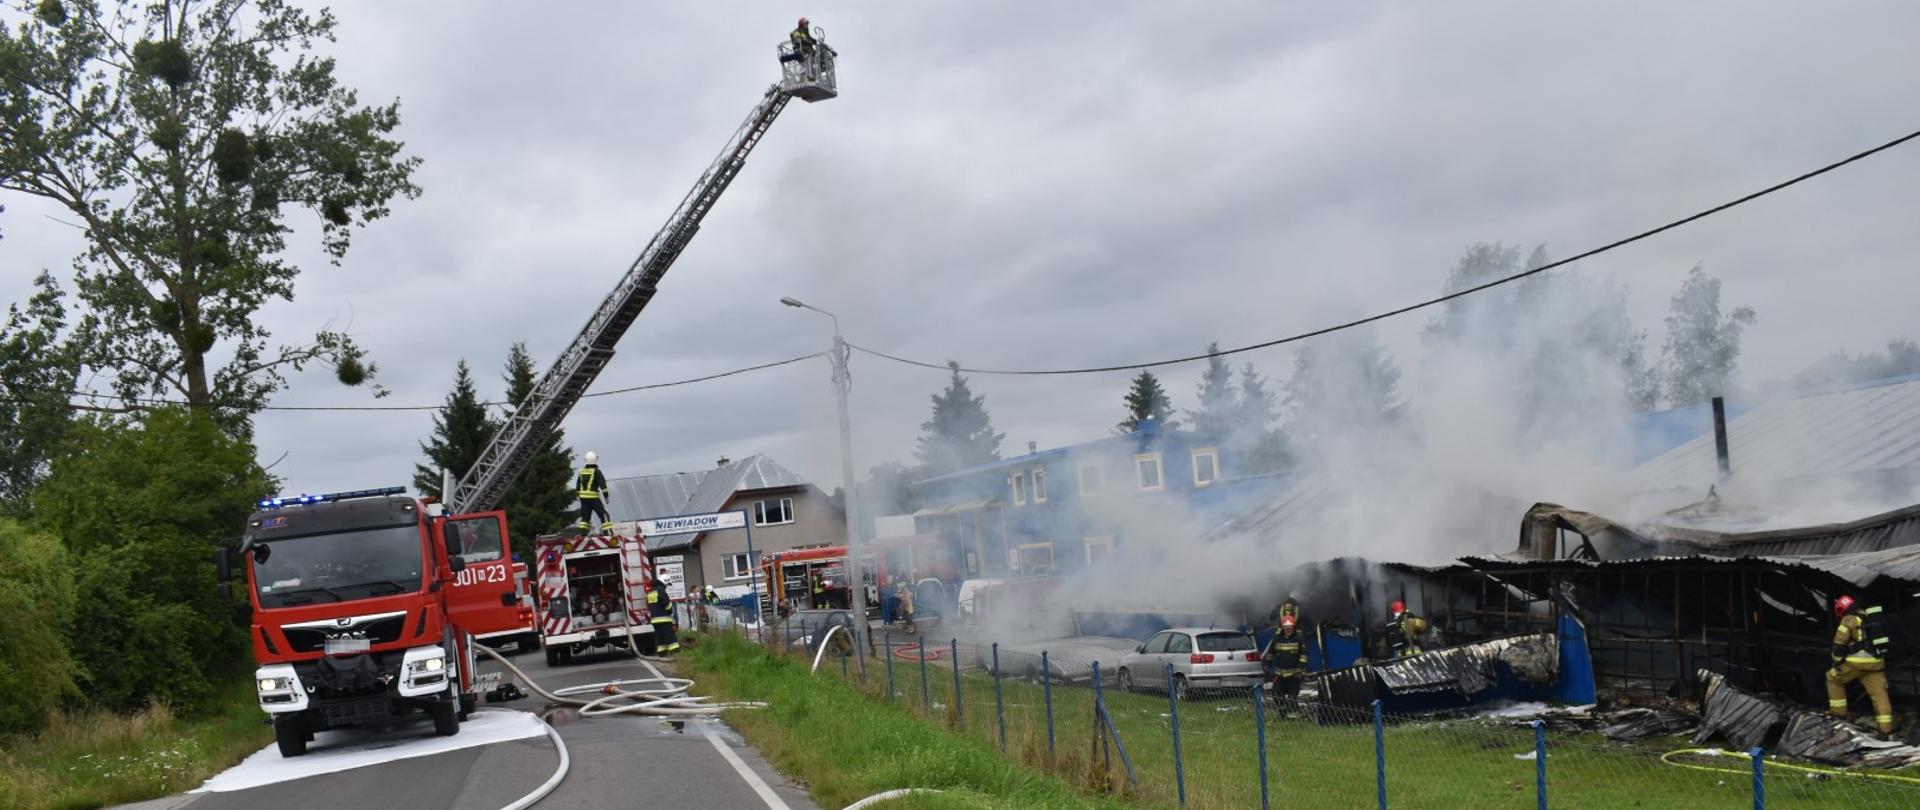 Zdjęcie ukazuje zastępy Państwowej i Ochotniczej Straży Pożarnej podczas gaszenia pożaru hali z przyczepami kempingowymi w miejscowości Bartąg